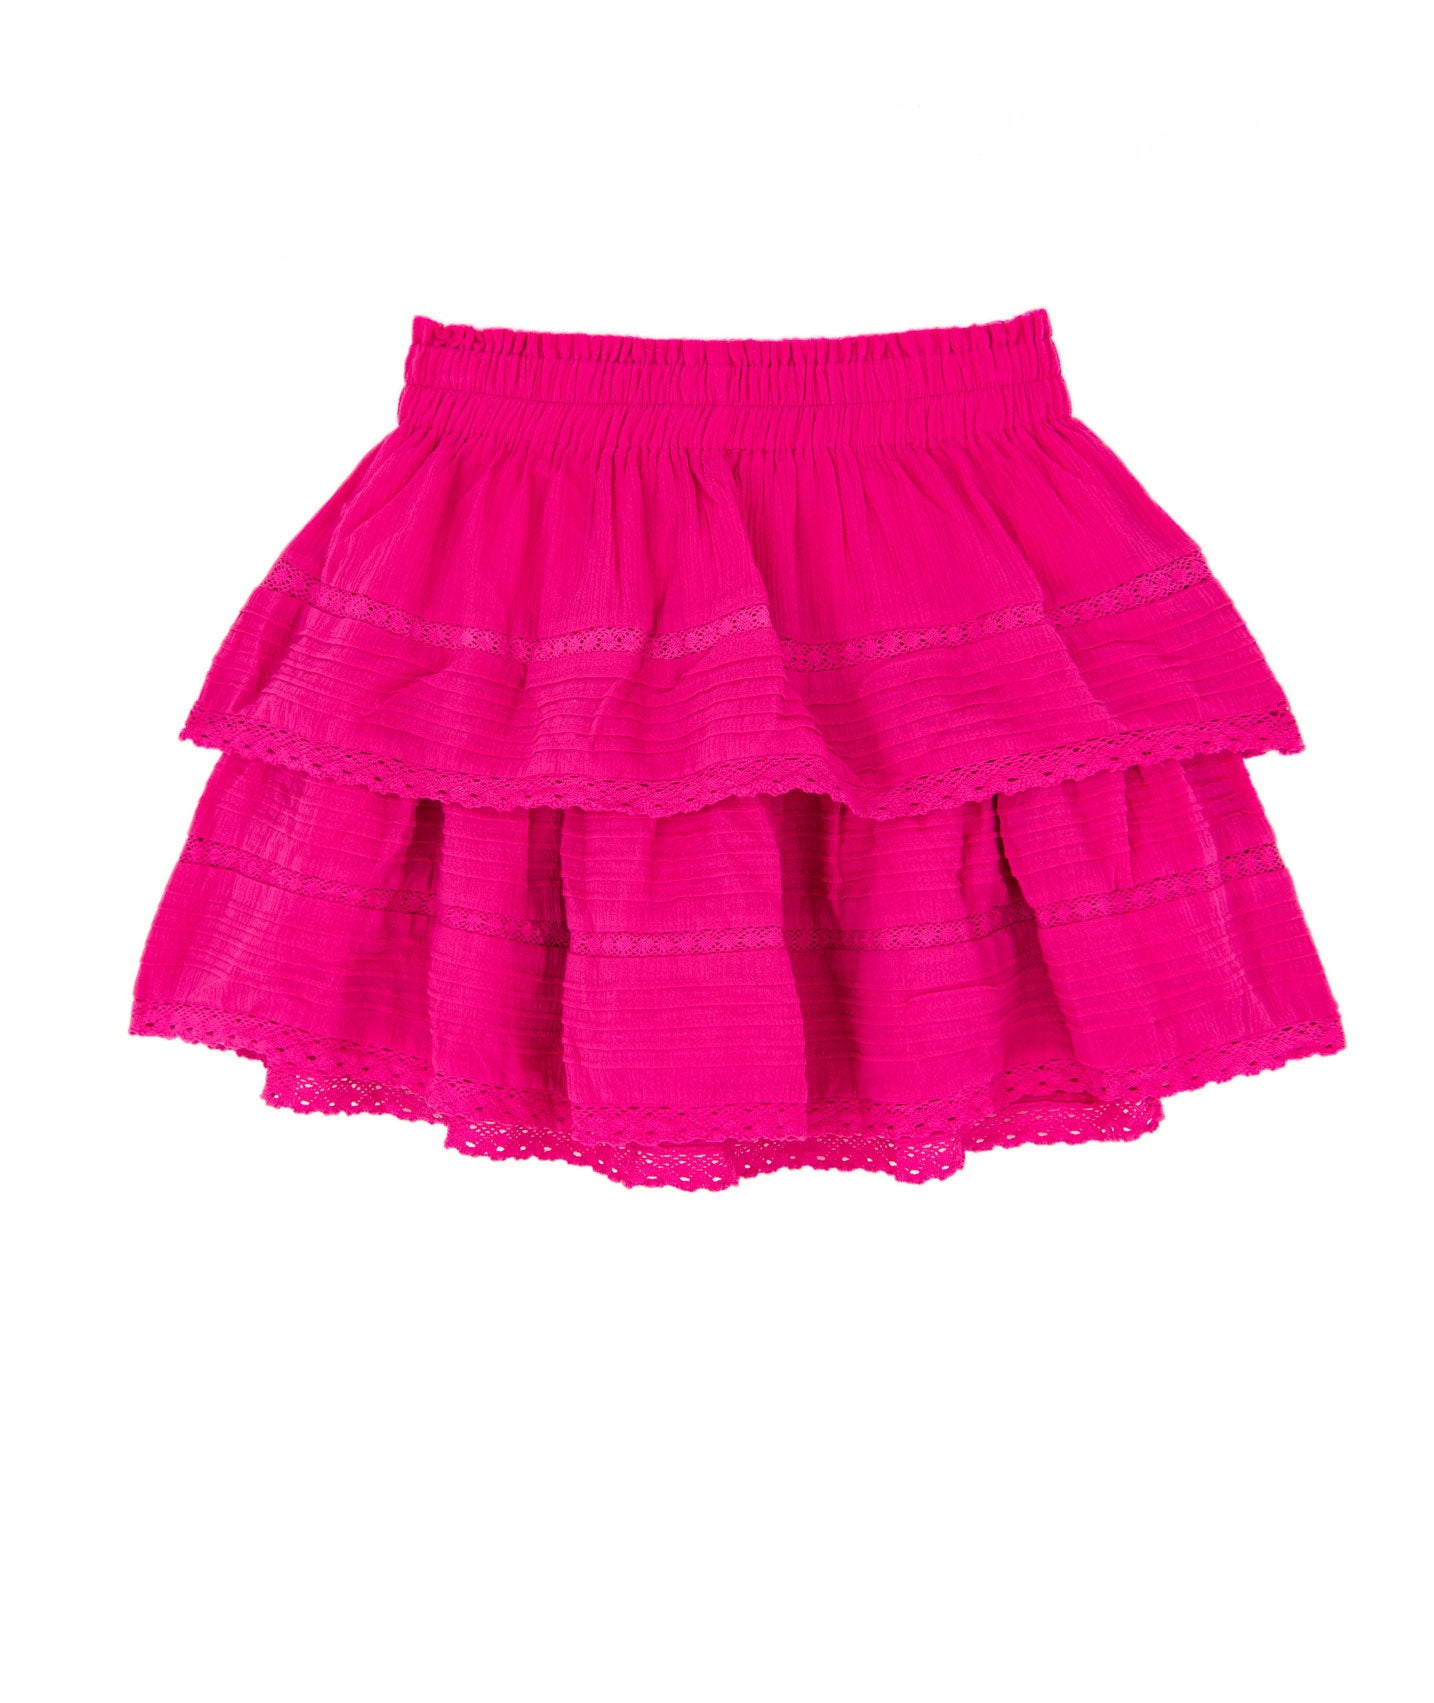 The Ariel Hot Pink Ruffle Skirt